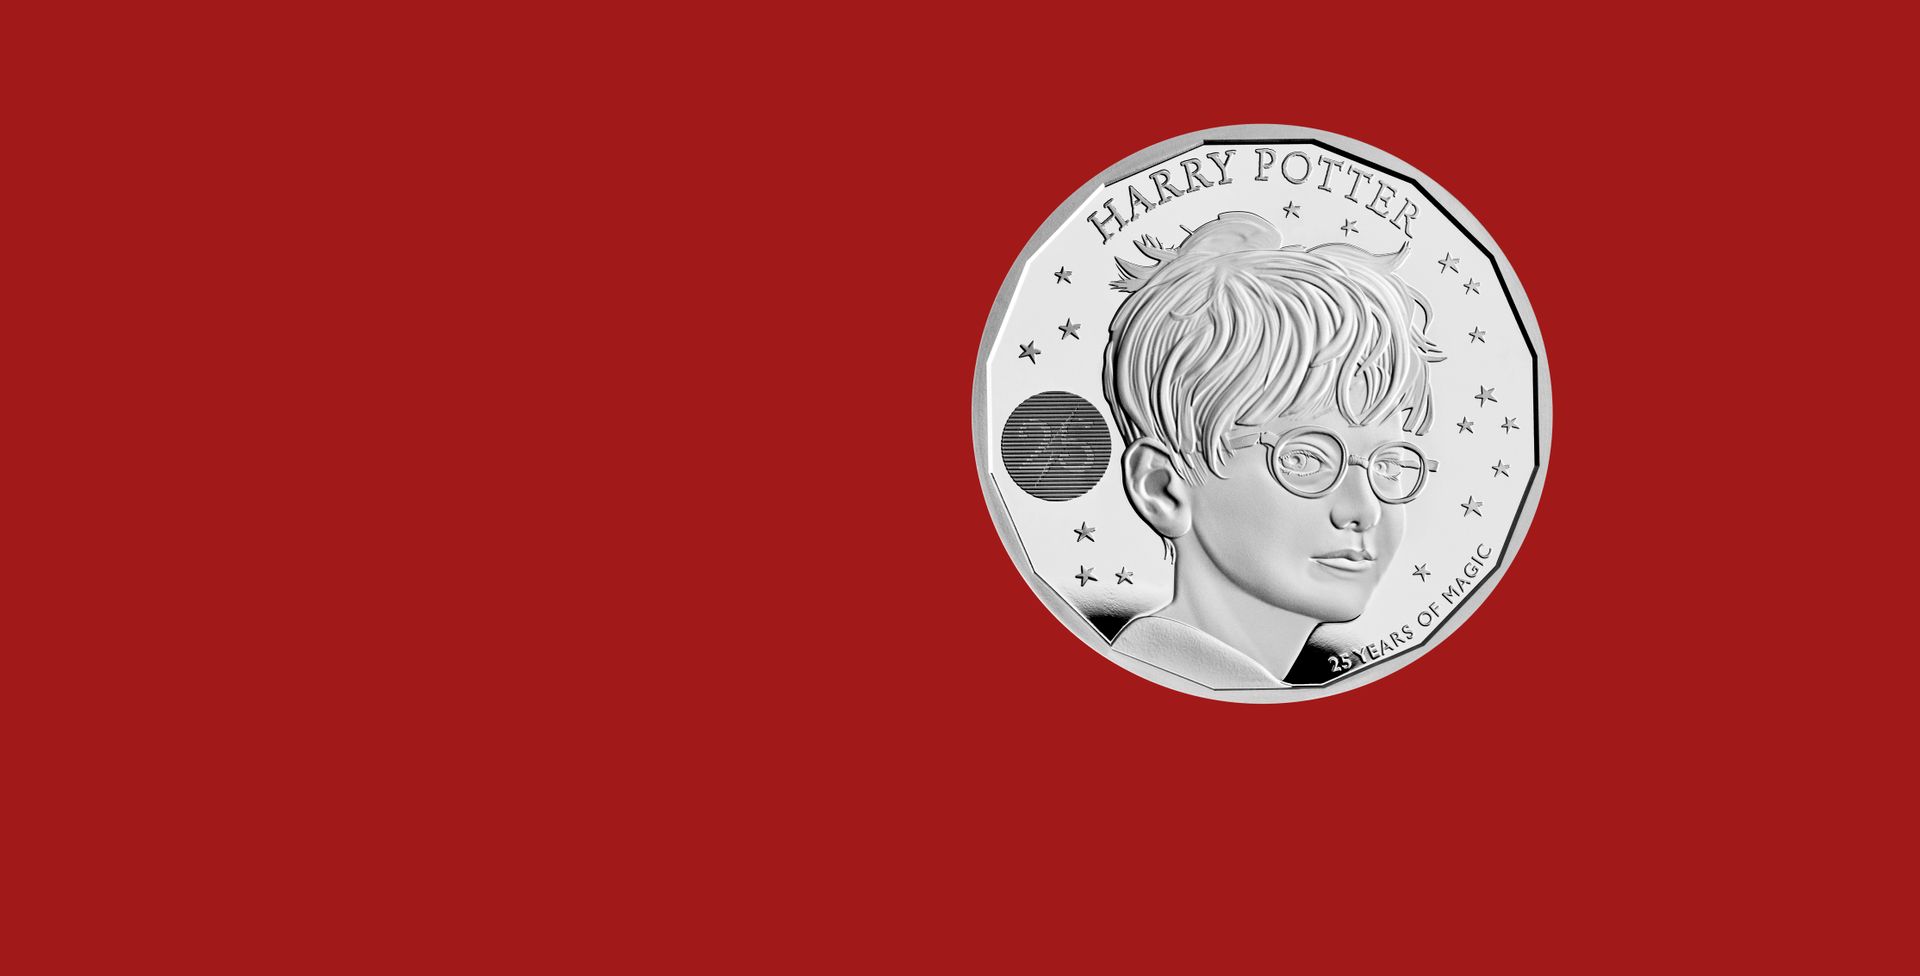 En sølvmynt med en gutt med kort hår, briller, og teksten "Harry Potter" og "25 år med magi" skrevet på engelsk, ligger på en mørkerød redigert bakgrunn. 